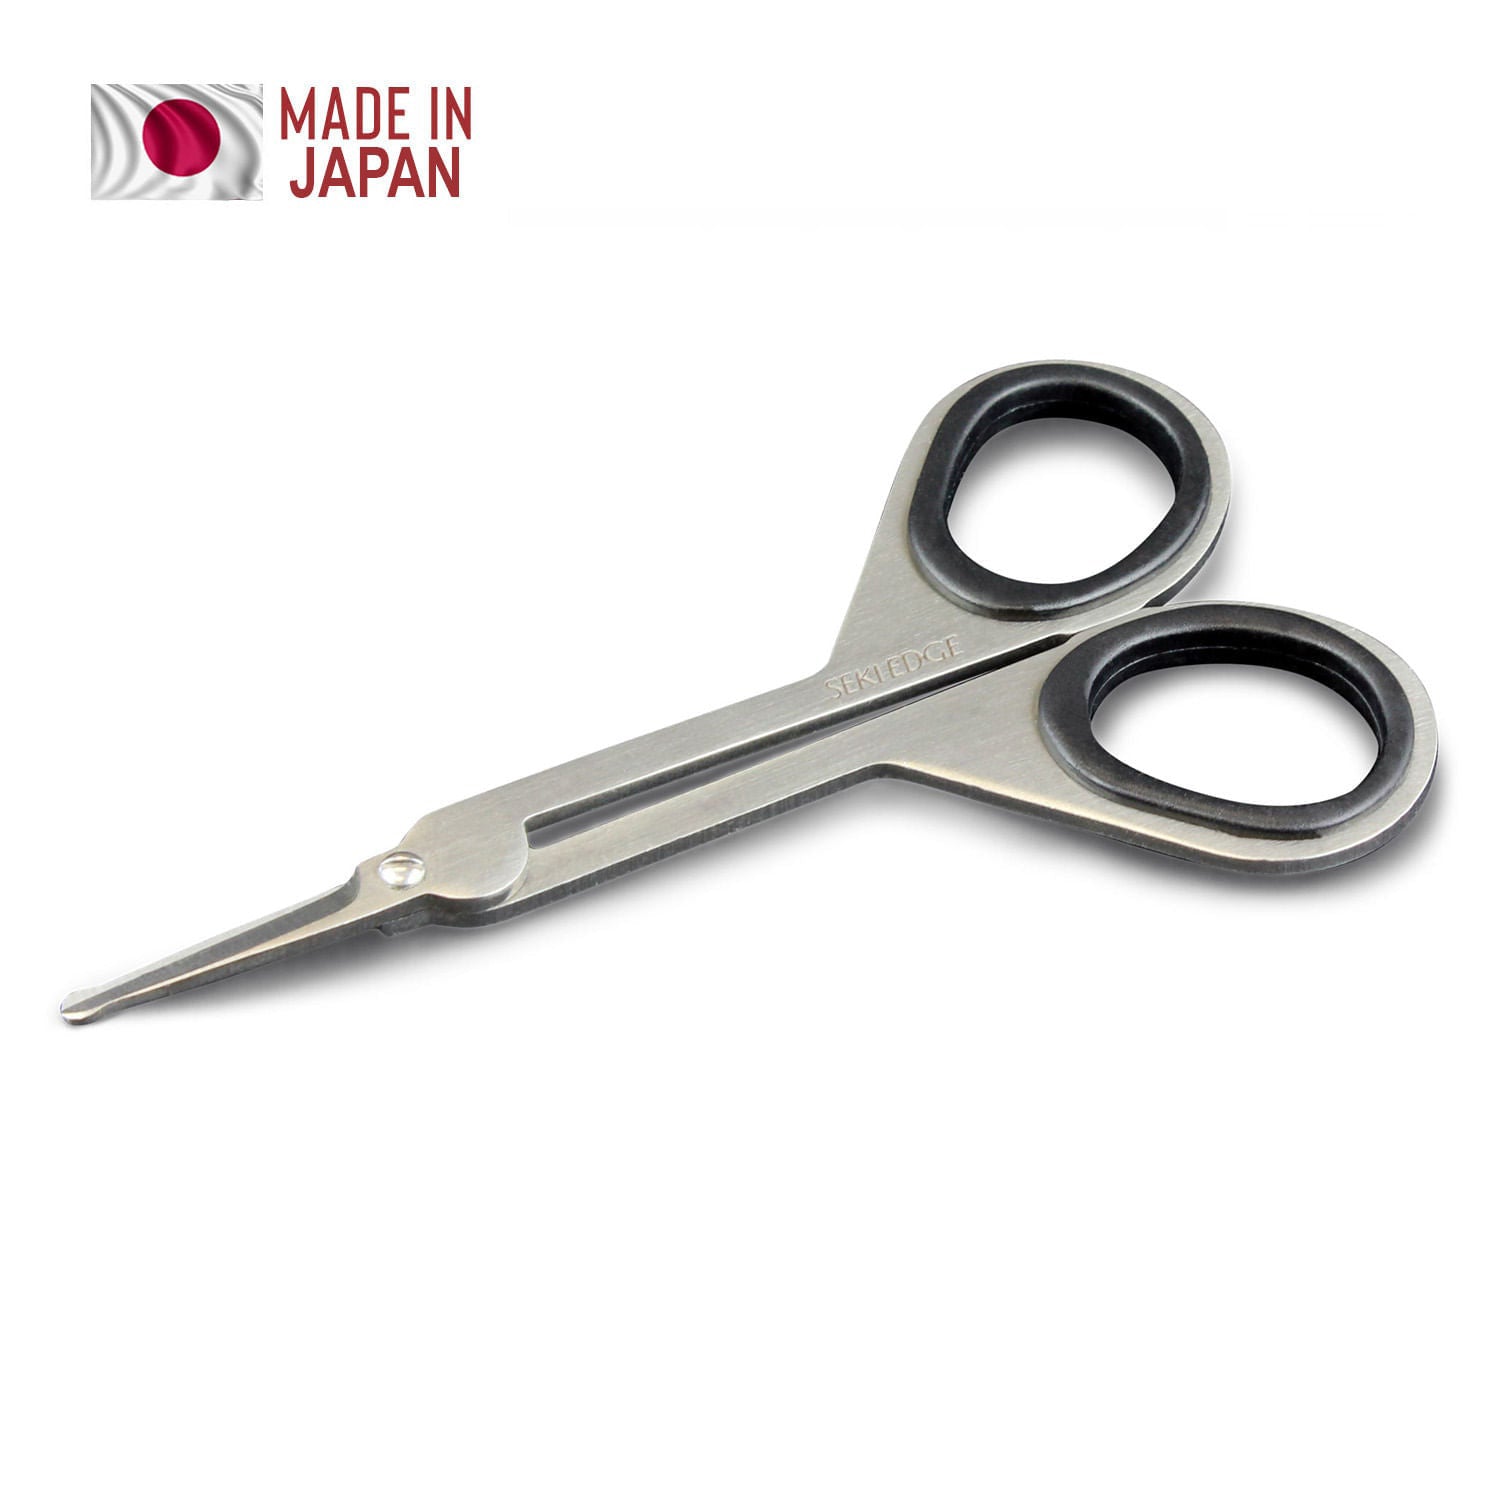 Nostril safety scissors